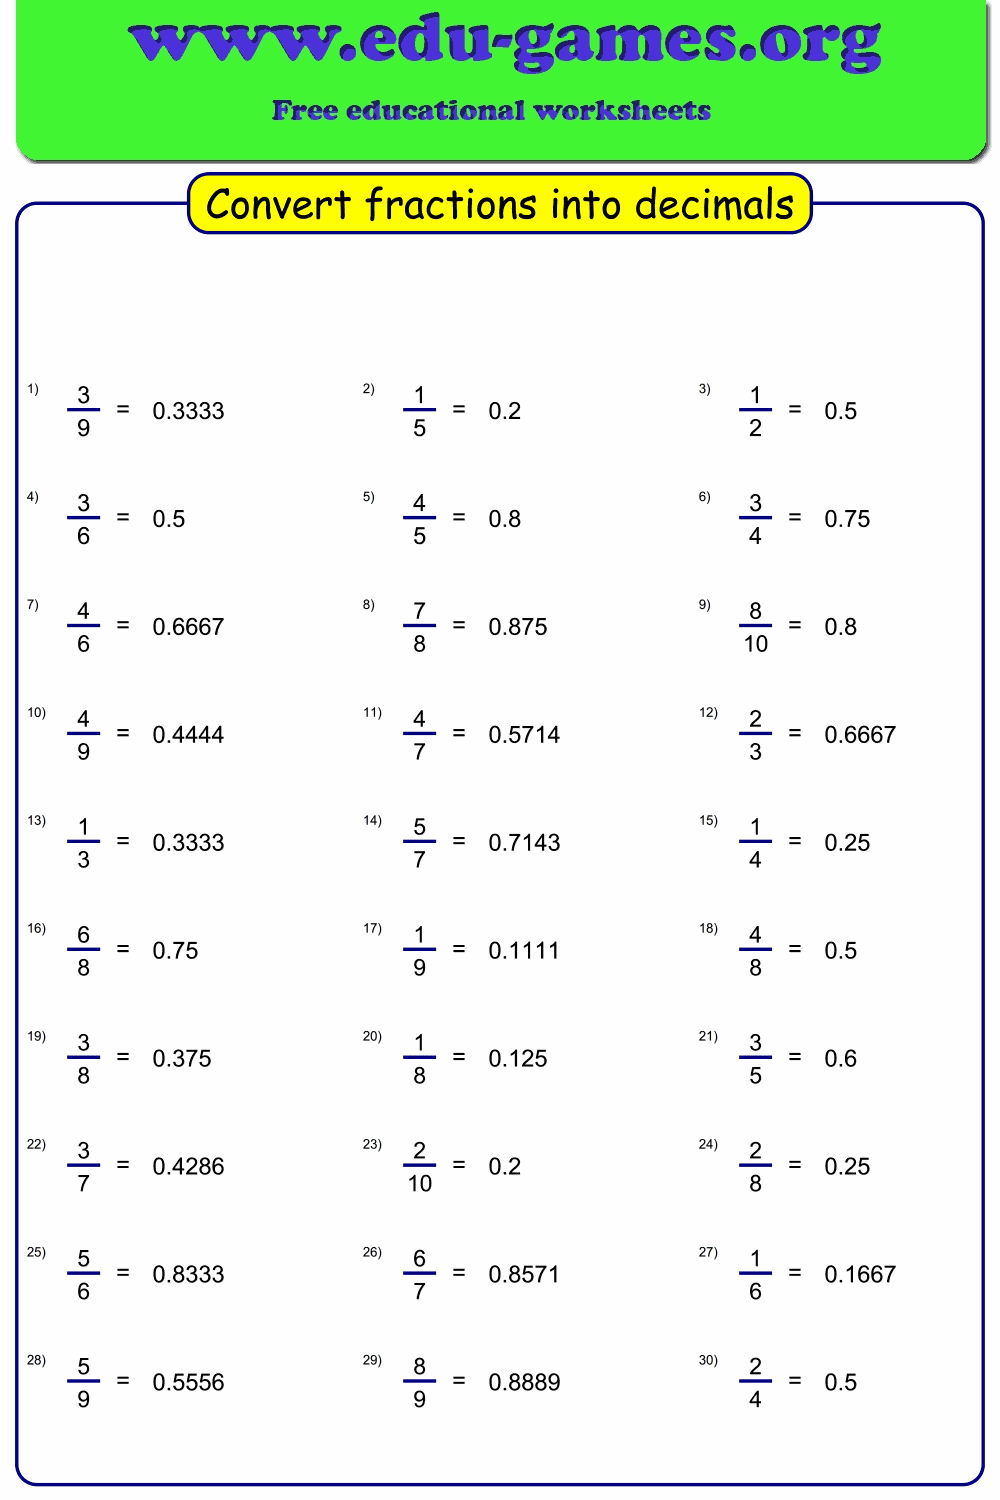 Convert fraction to decimal worksheet maker | Free Printable Worksheets